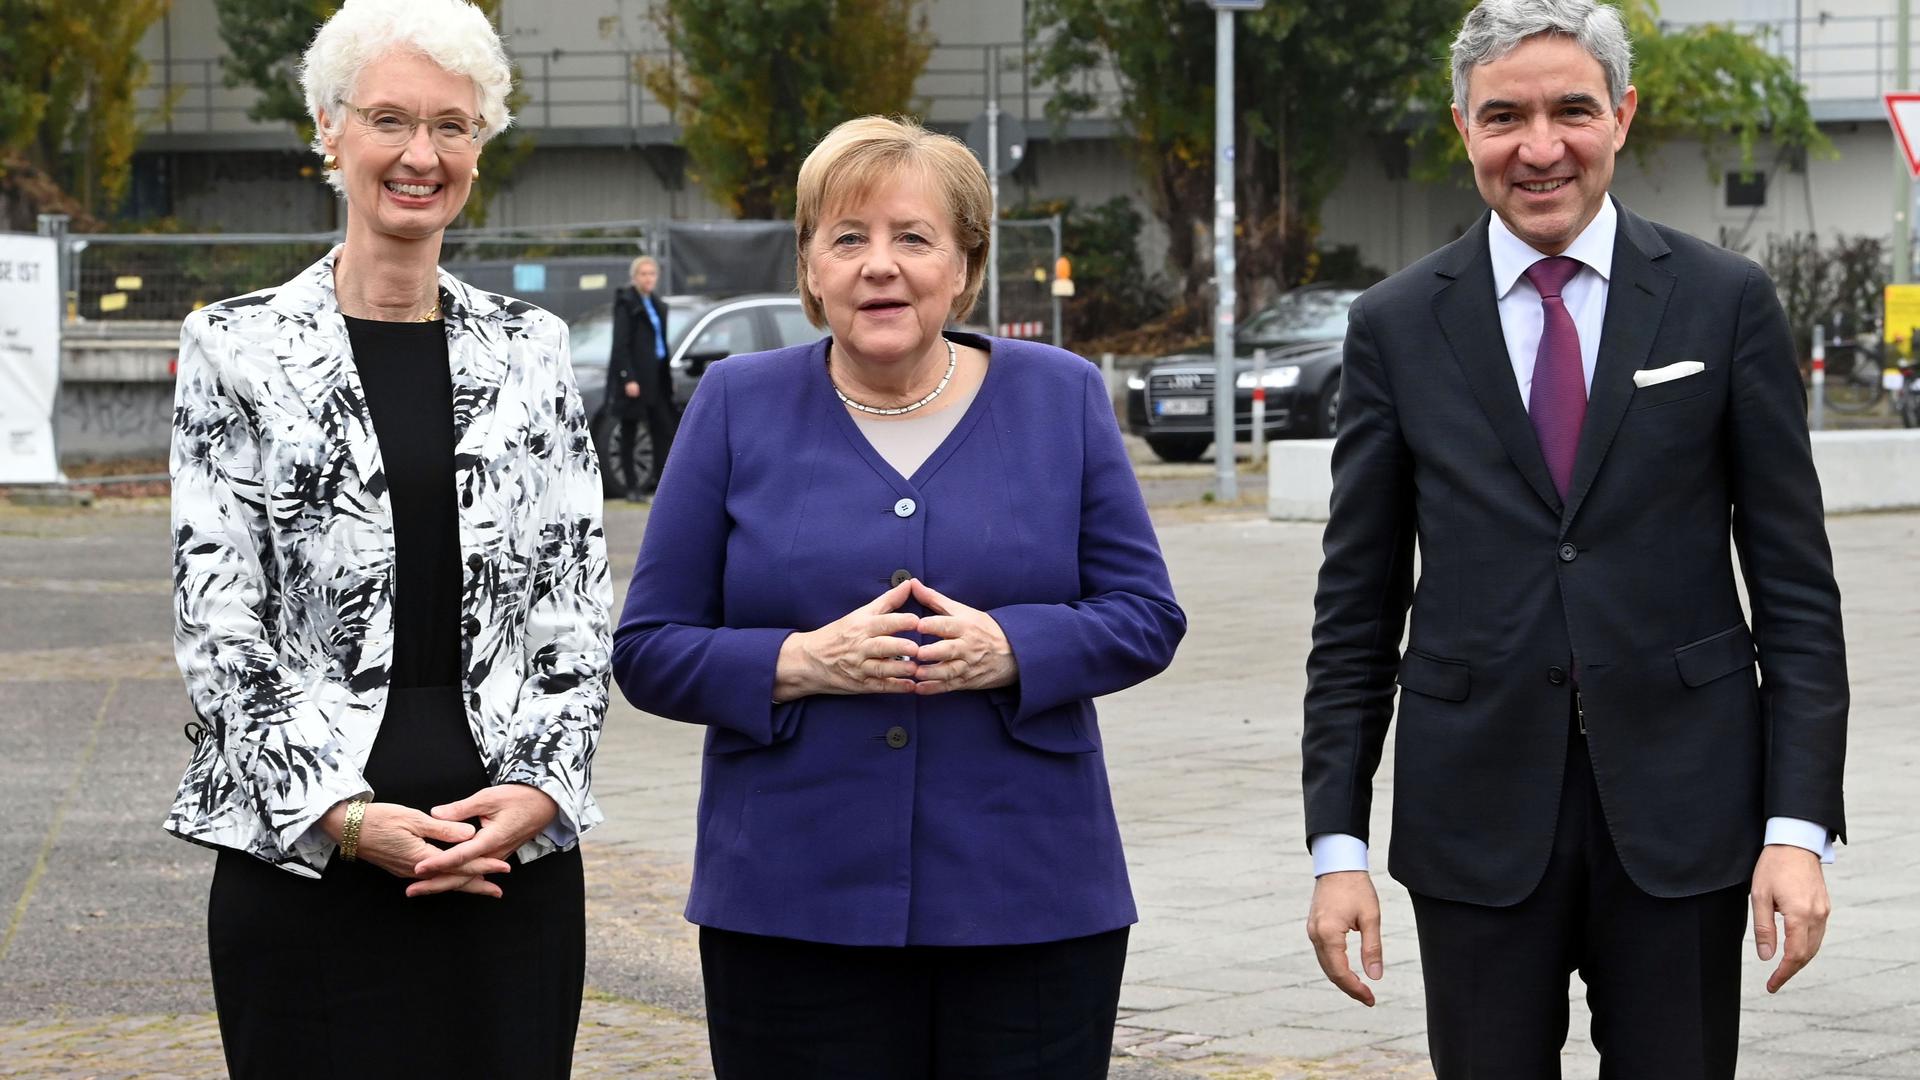 Doris König (von links), Vizepräsidentin des Bundesverfassungsgerichts, die geschäftsführende Bundeskanzlerin Angela Merkel (CDU) und Stephan Harbarth, Präsident des Bundesverfassungsgerichts, stehen vor Beginn des Festakts vor dem Badischen Staatstheater in Karlsruhe zusammen.